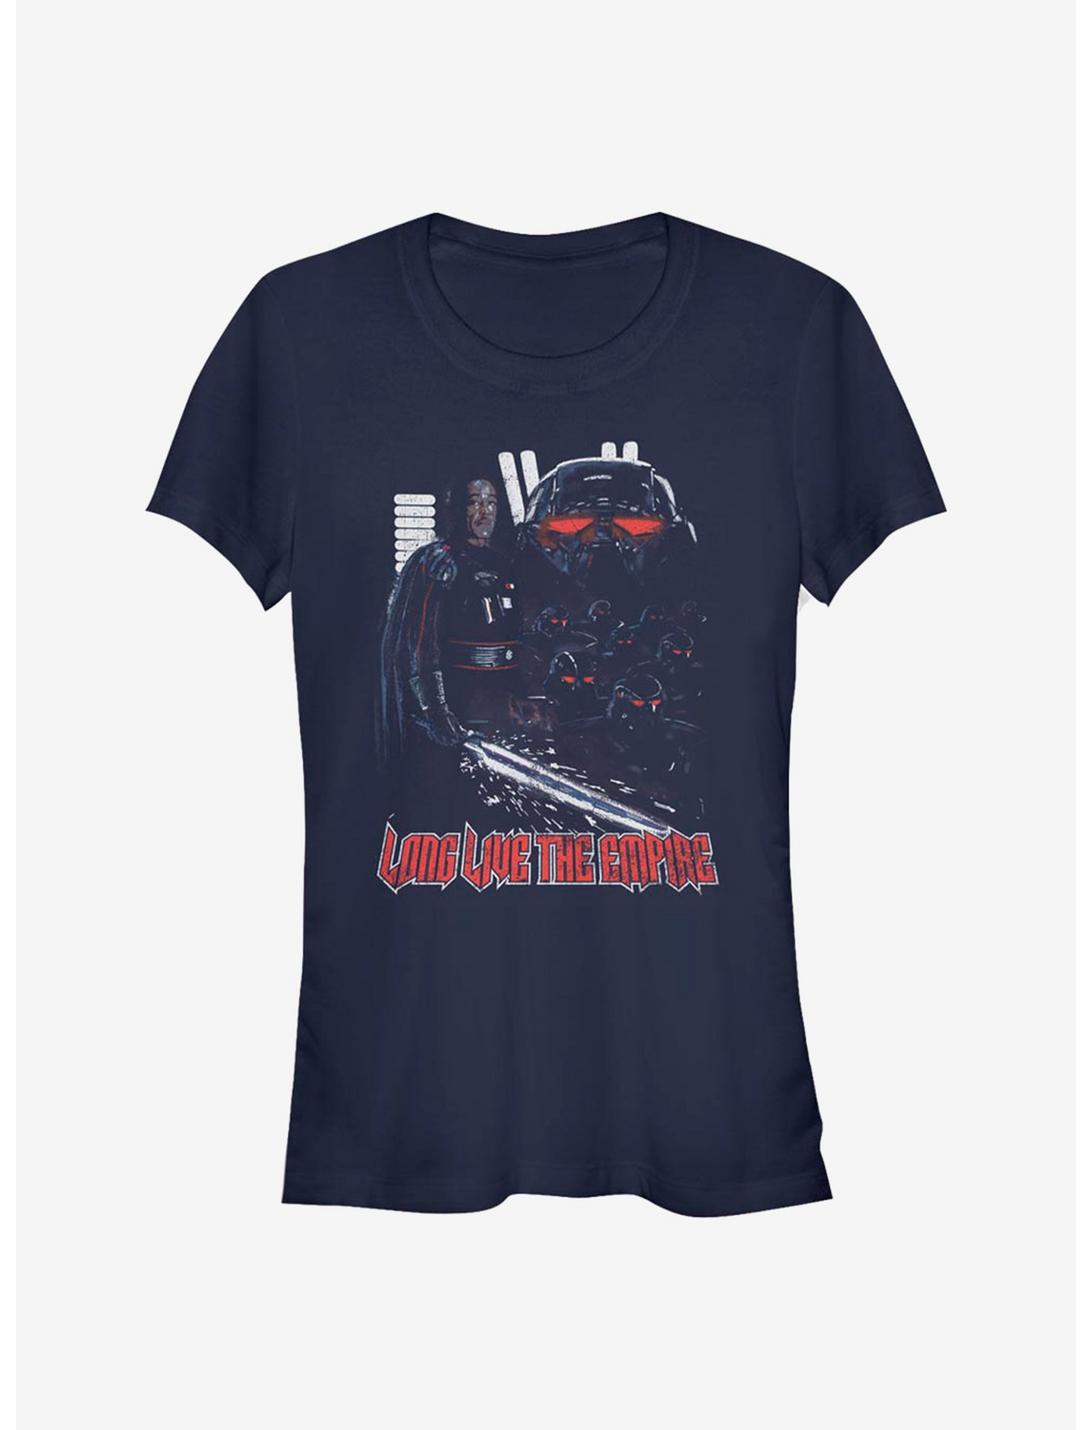 Star Wars The Mandalorian Darksaber Controller Girls T-Shirt - BLUE ...